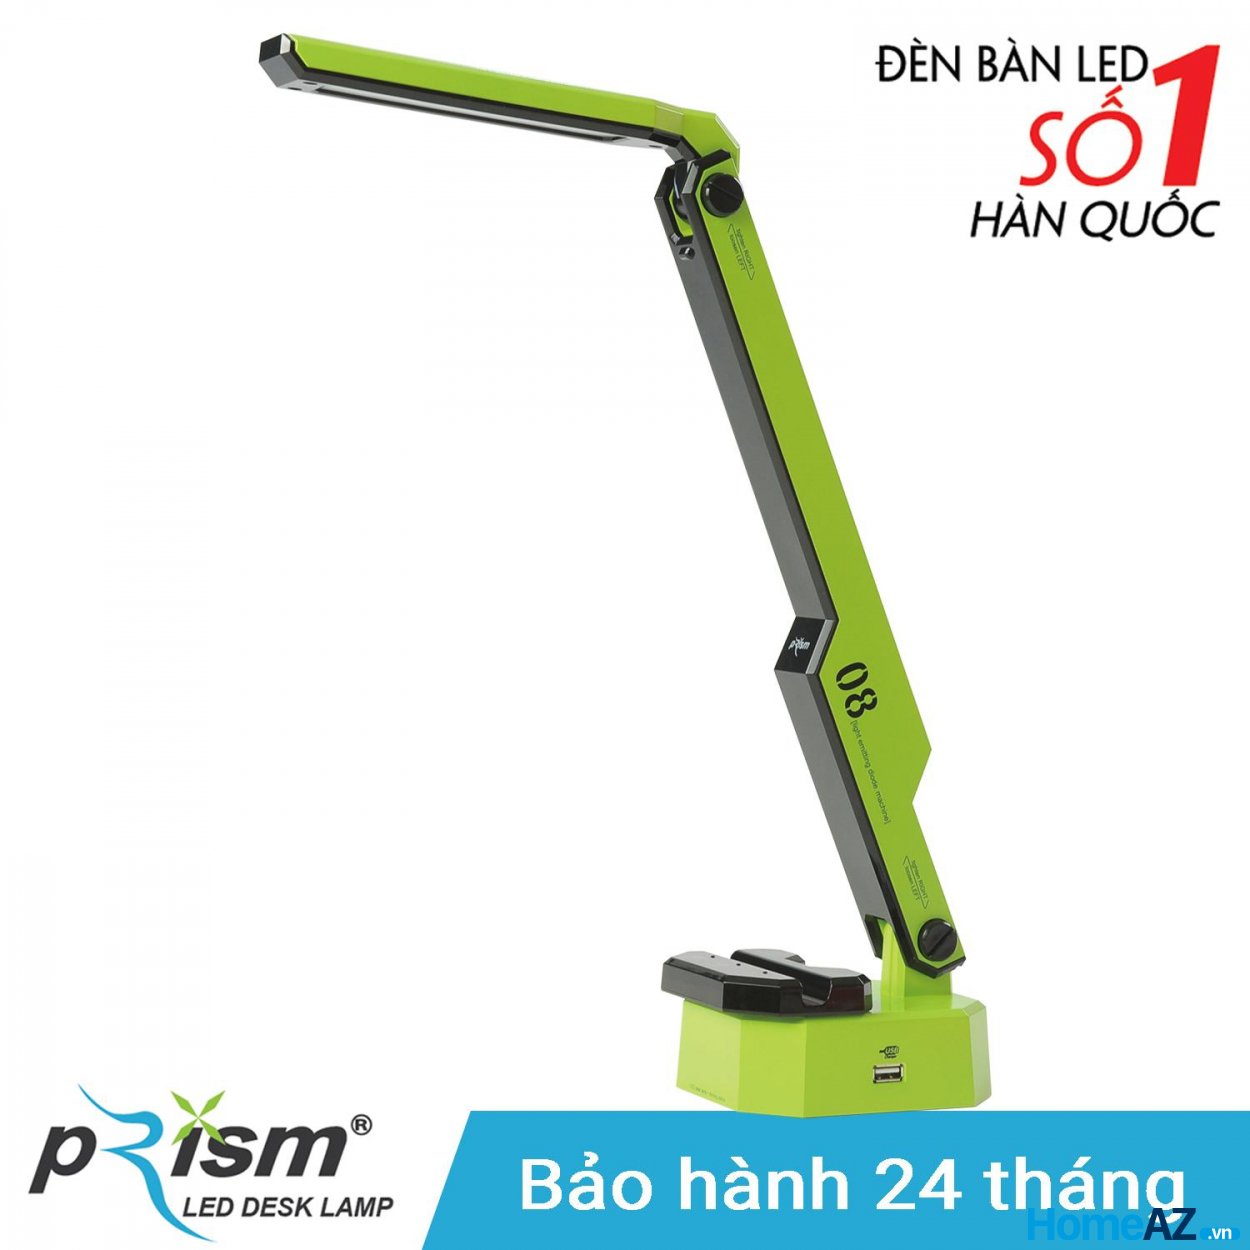 PRISM là thương hiệu sản xuất đèn bàn LED số một Hàn Quốc, được nhiều người Việt Nam tin dùng và lựa chọn.